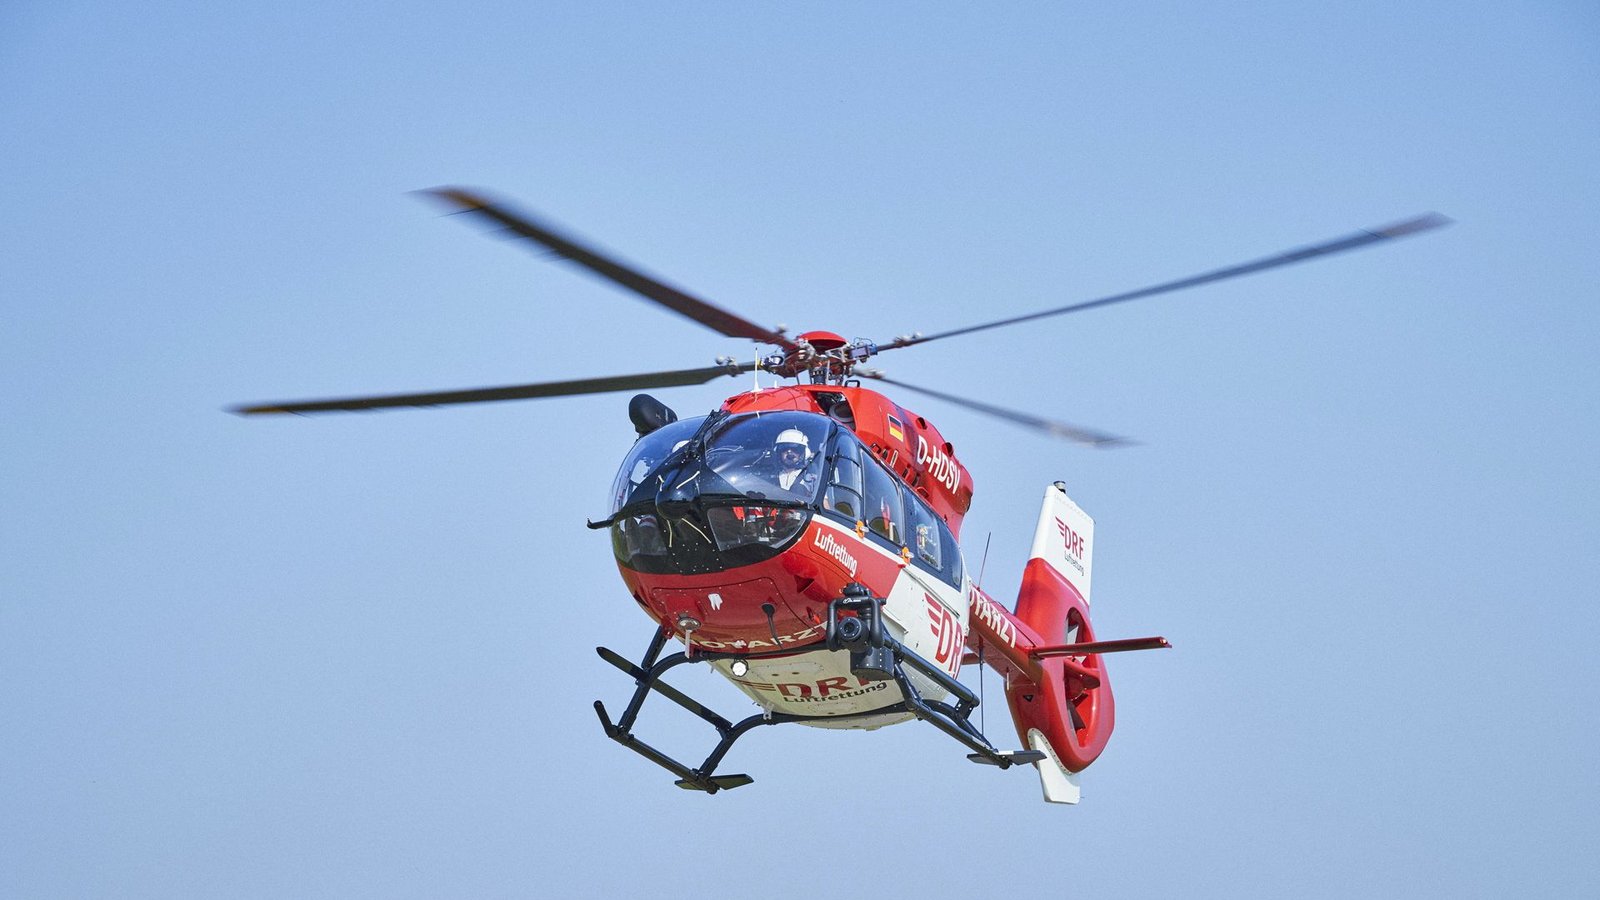 Der Mann wurde von einem Rettungshubschrauber in eine Klinik geflogen. (Symbolbild)Foto: dpa/Bert Spangemacher